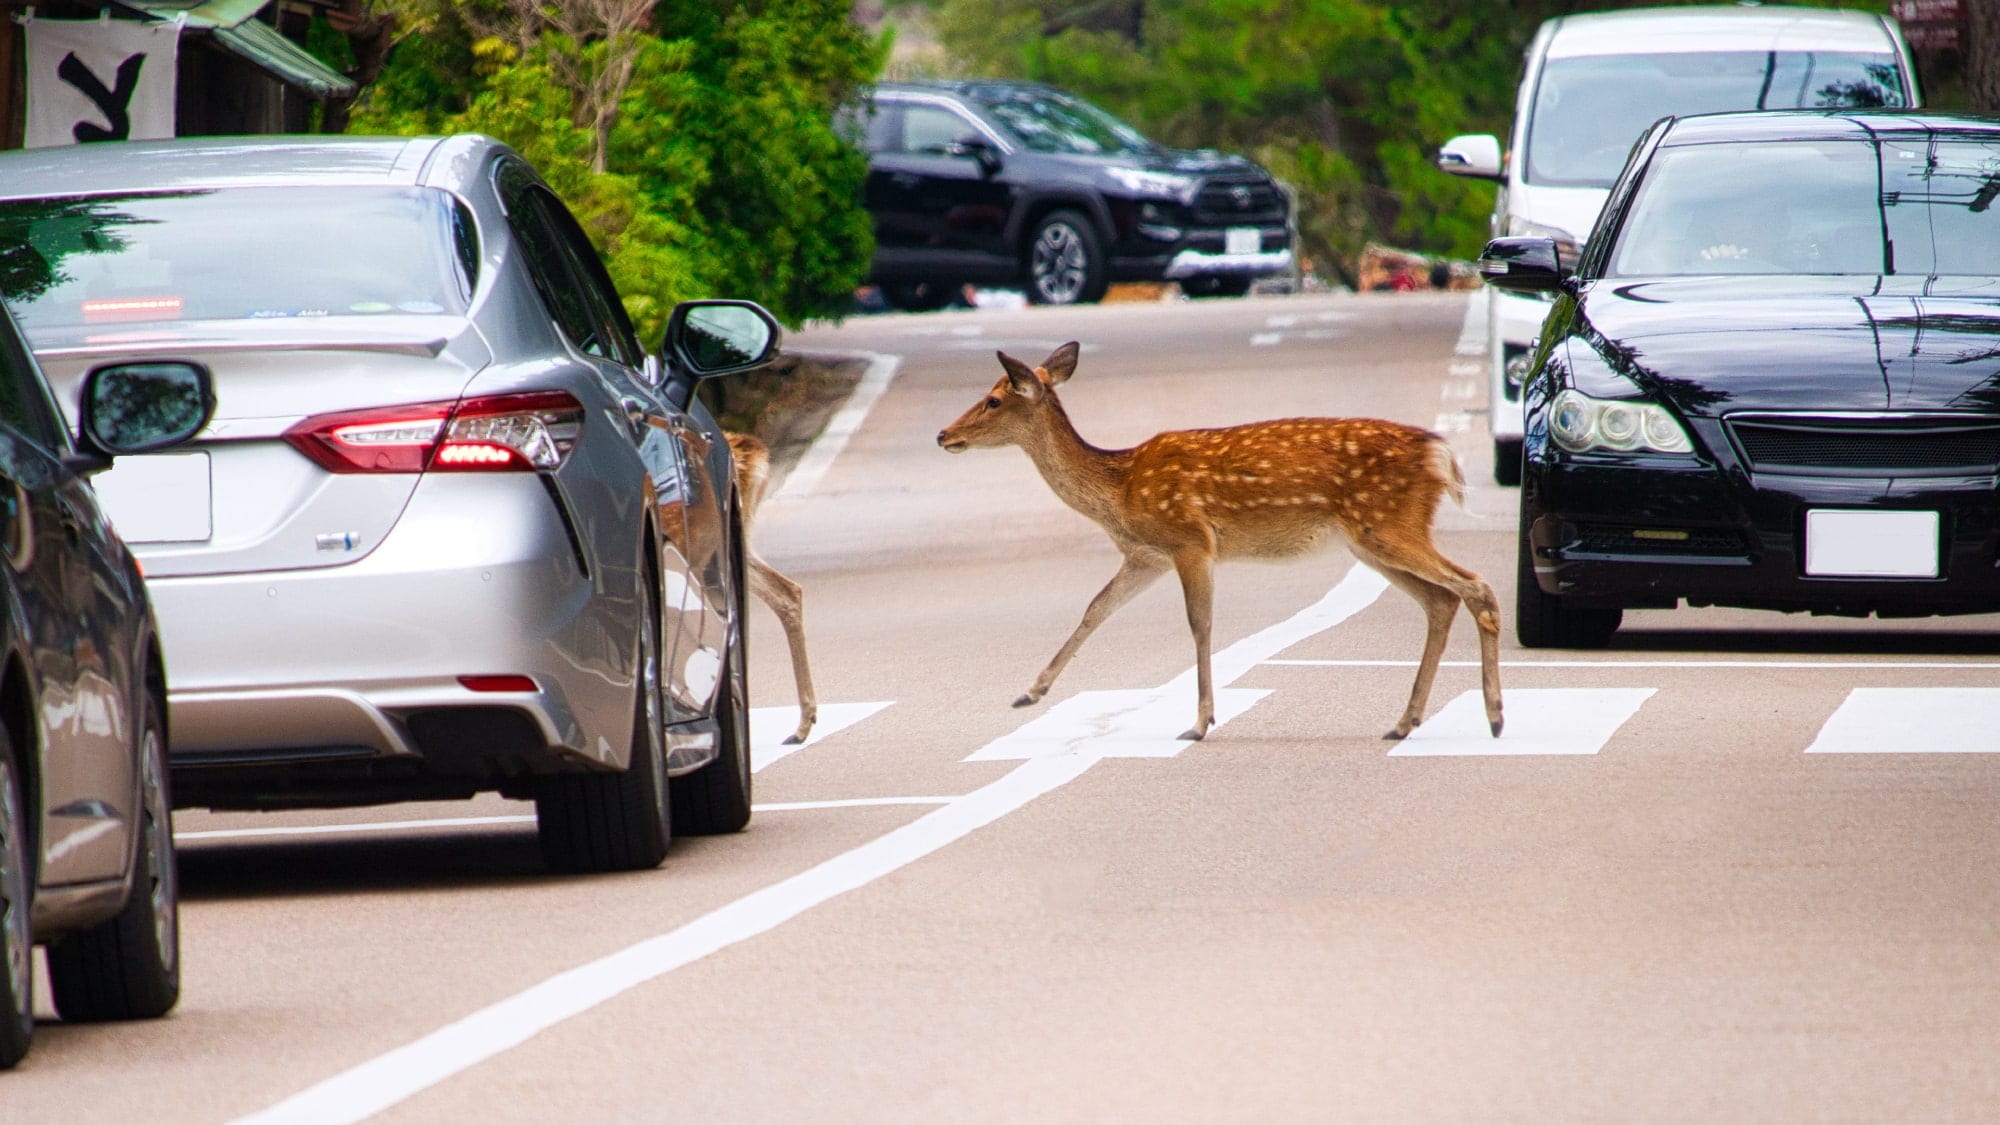 Deer crossing the pedestrian crossing